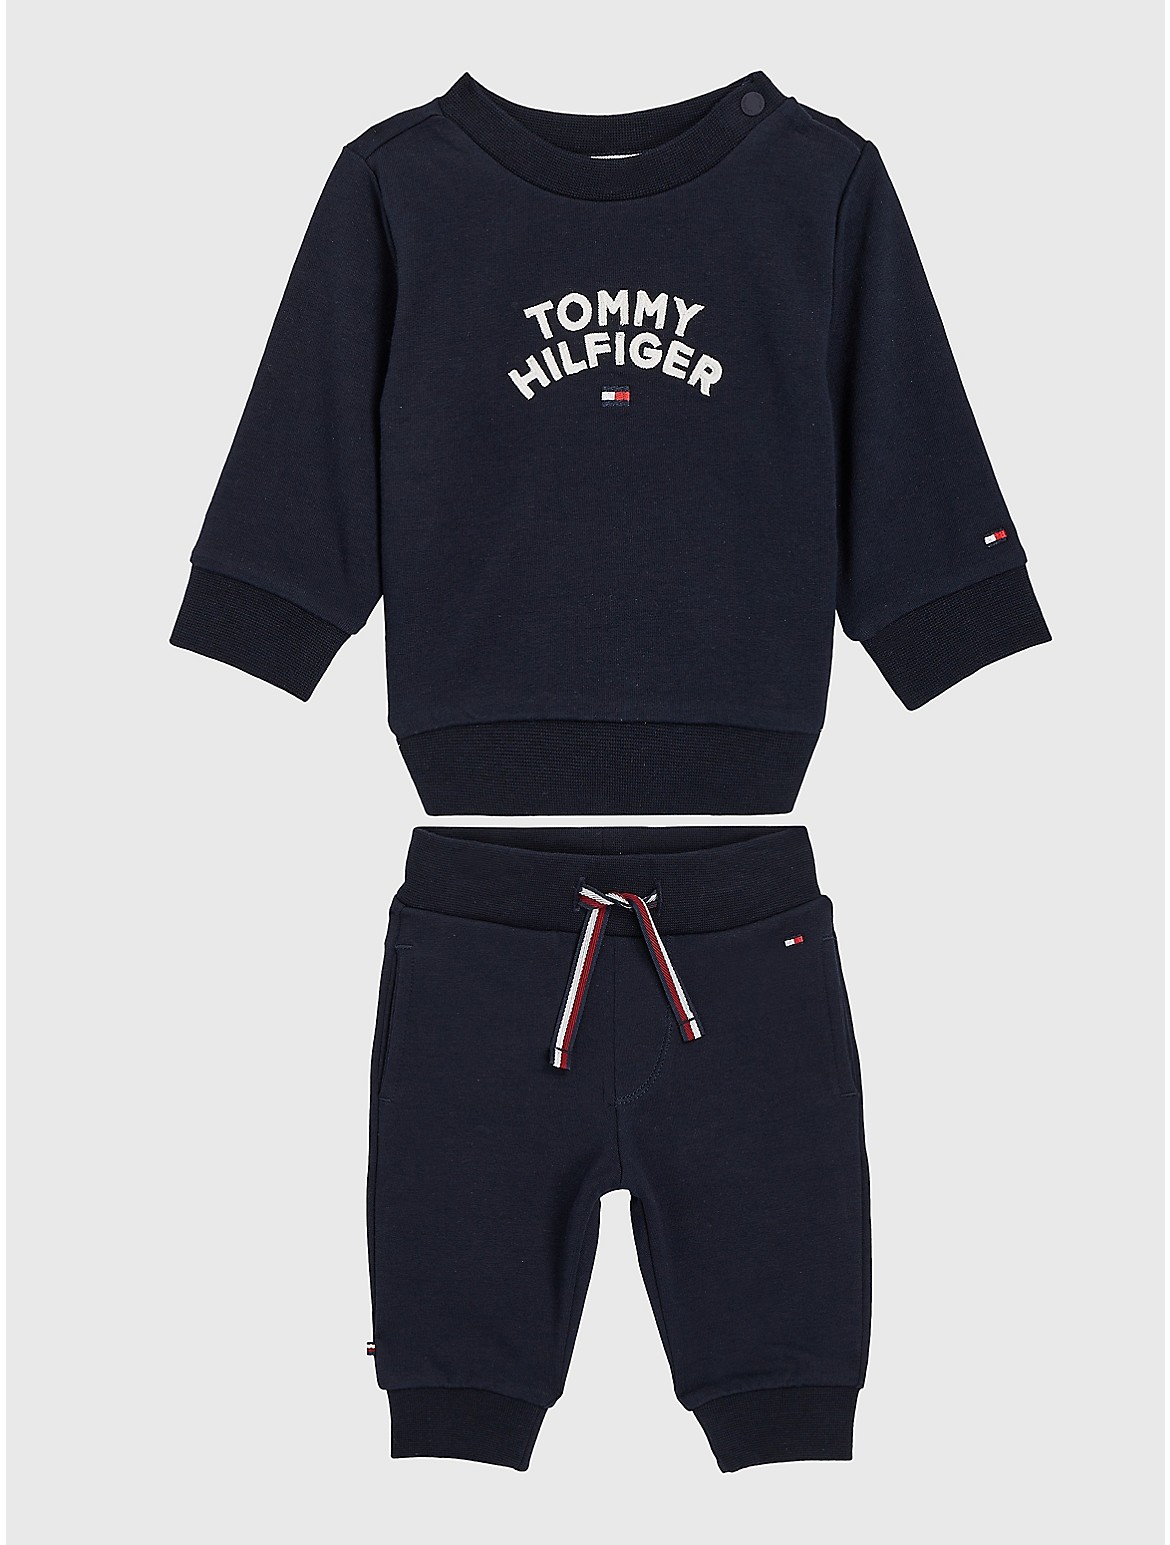 Tommy Hilfiger Babies' Tommy Flag Logo Sweat Set - Blue - 9M